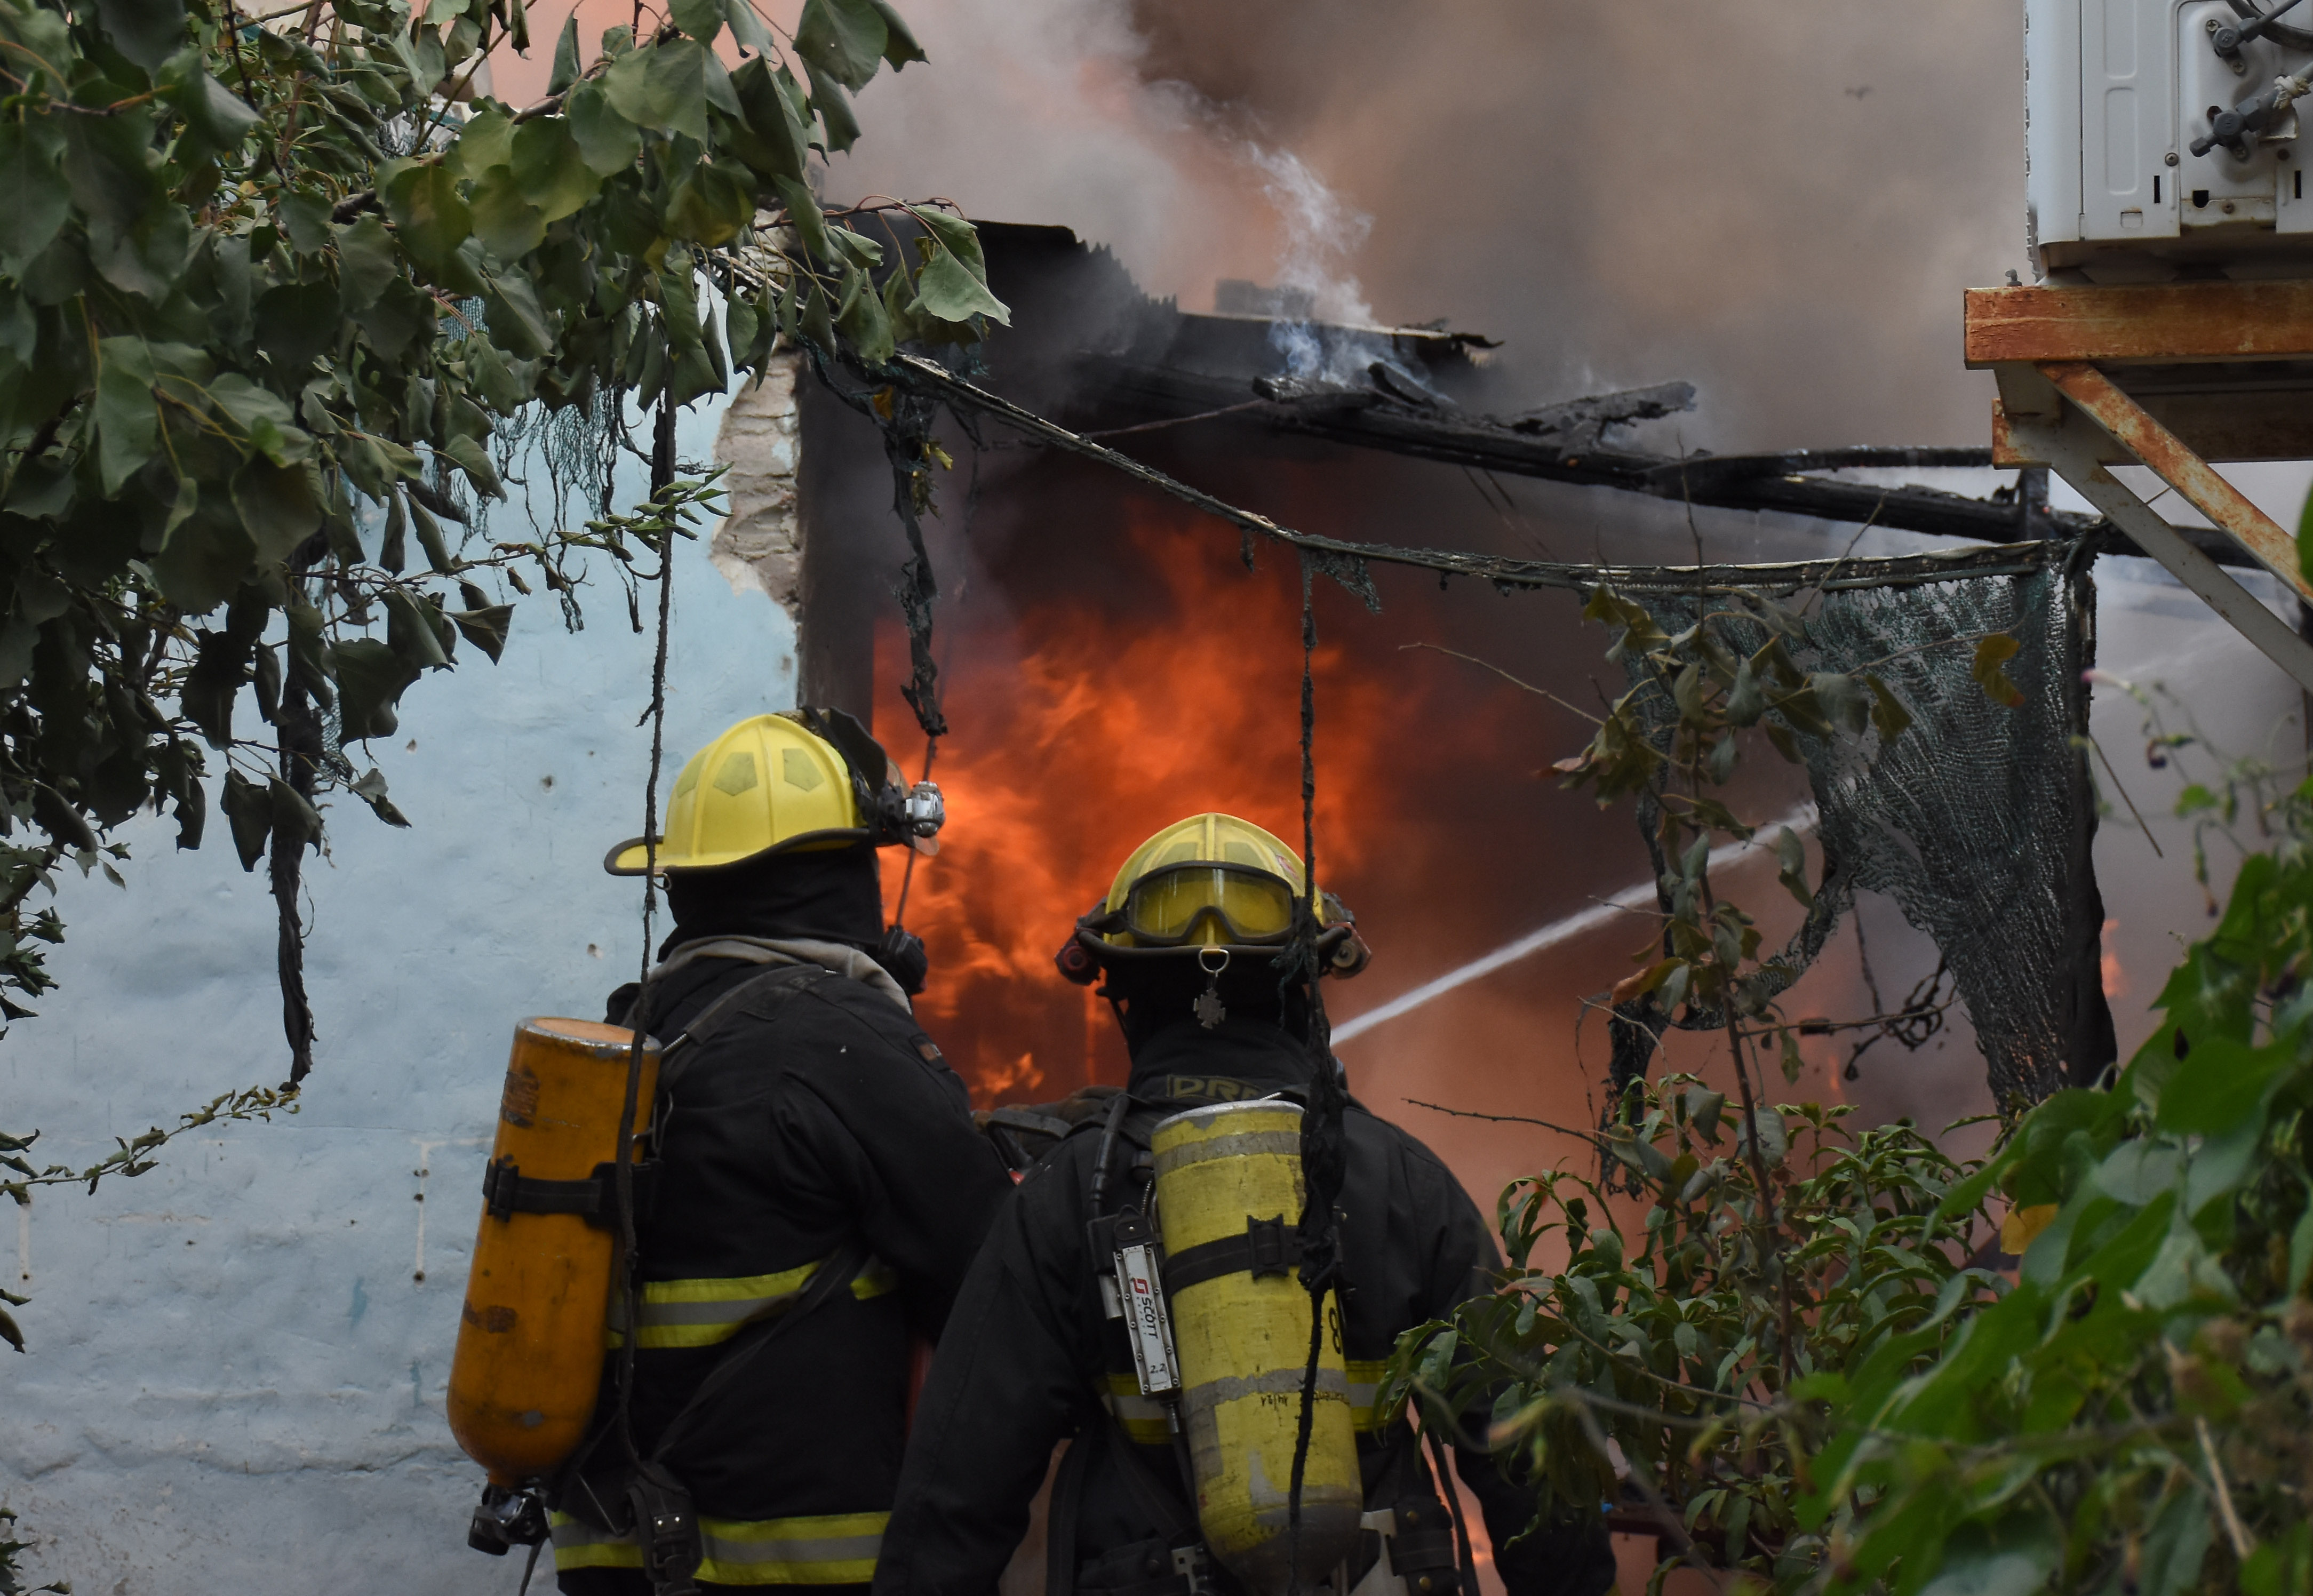 Los bomberos de Roca sólo asistirán a casos de urgencia, según informaron a través de un comunicado de prensa. (foto: archivo)